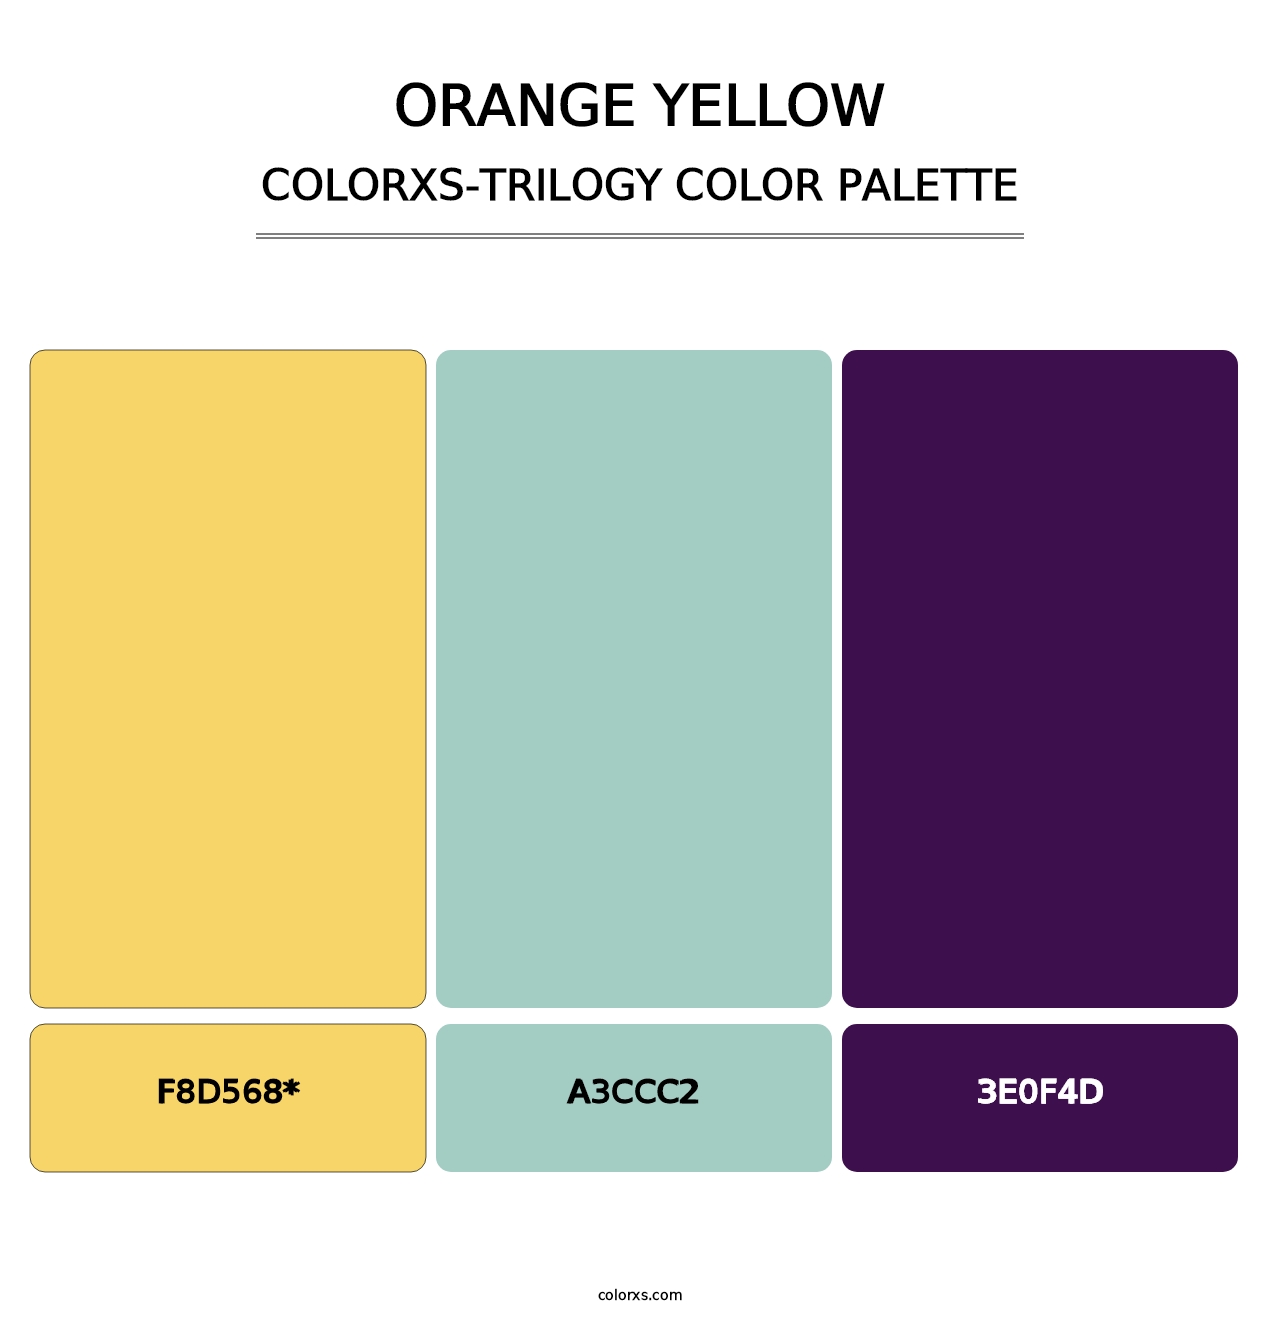 Orange Yellow - Colorxs Trilogy Palette